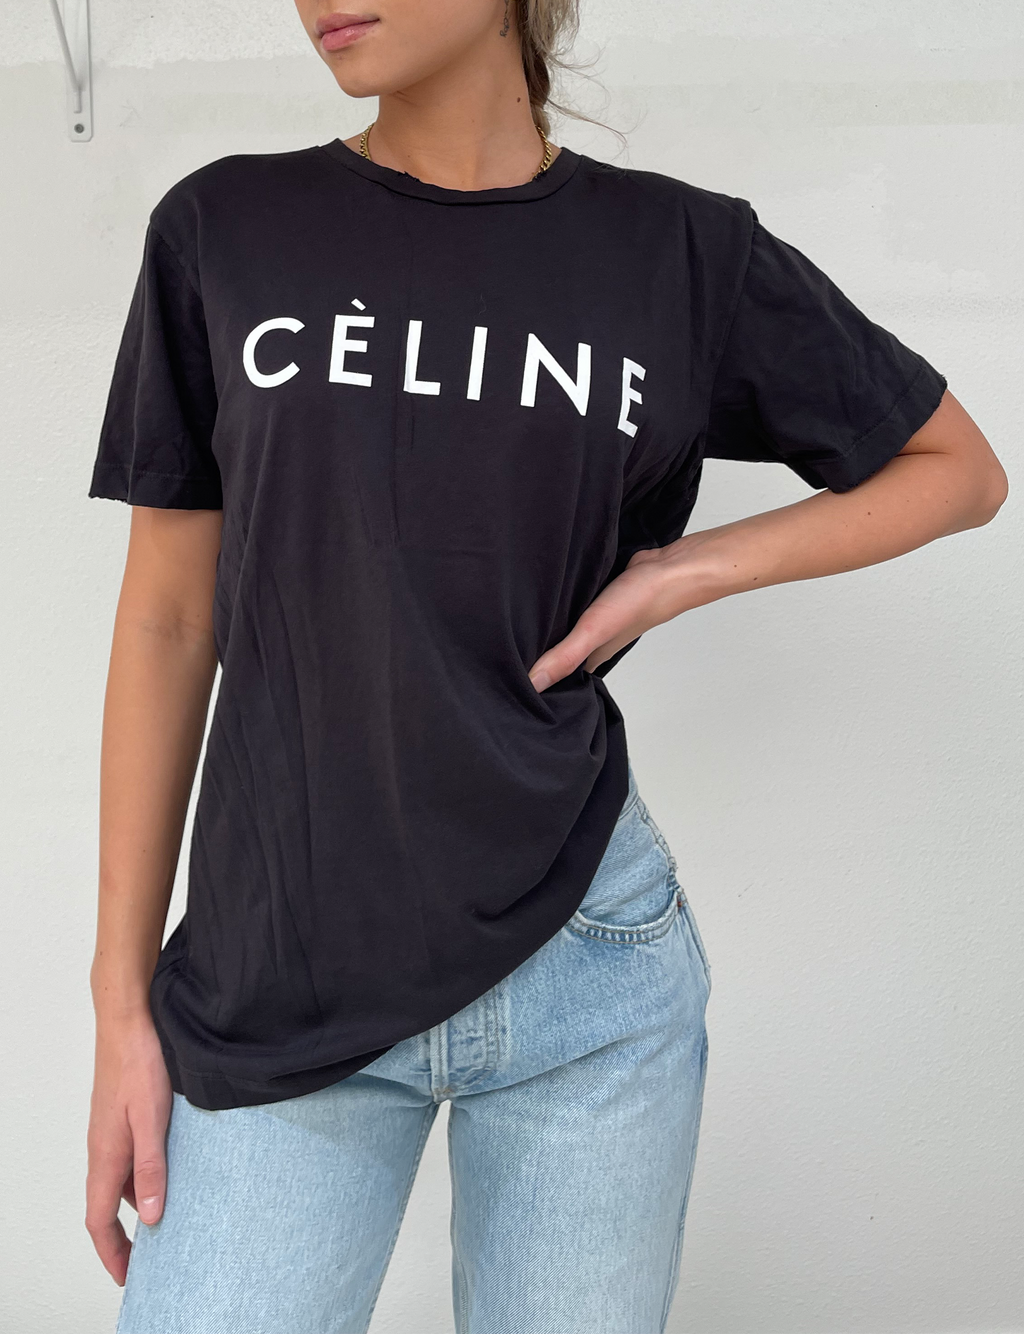 Celine Unisex Tee, Black